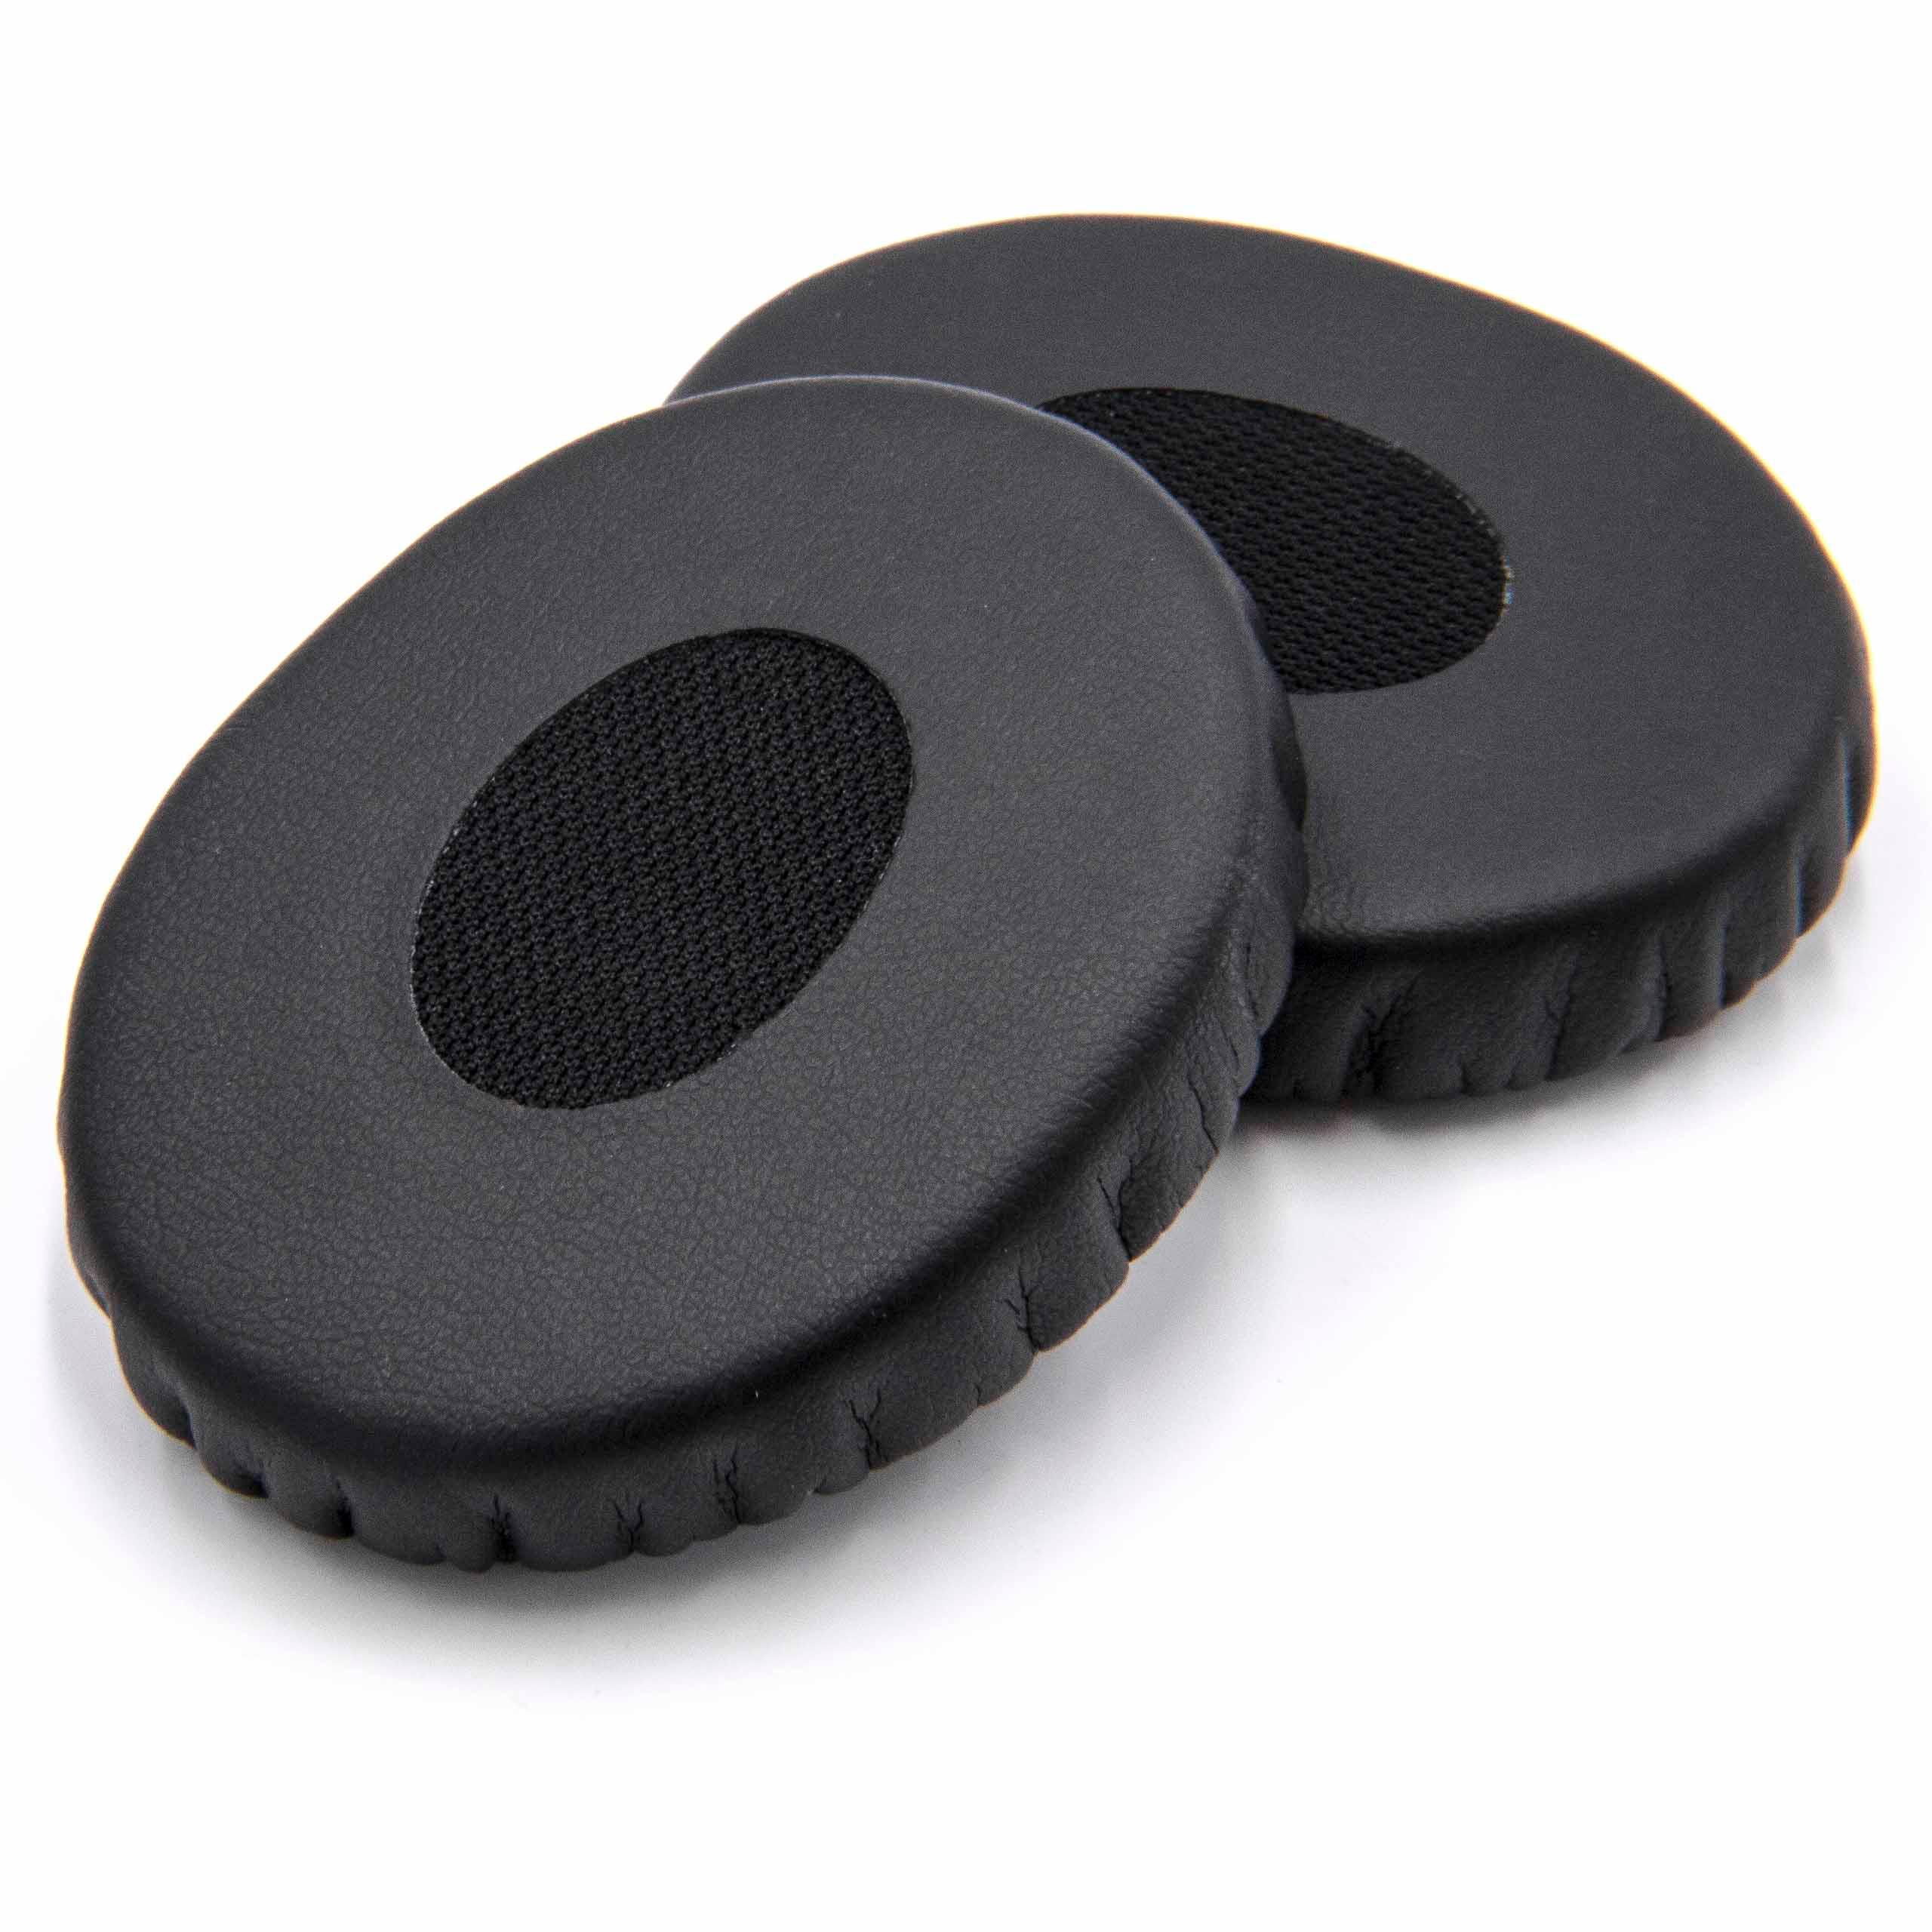 2x Coussinets d'oreille 5,6cm pour casque Bose OnEar - fibre synthétique noir